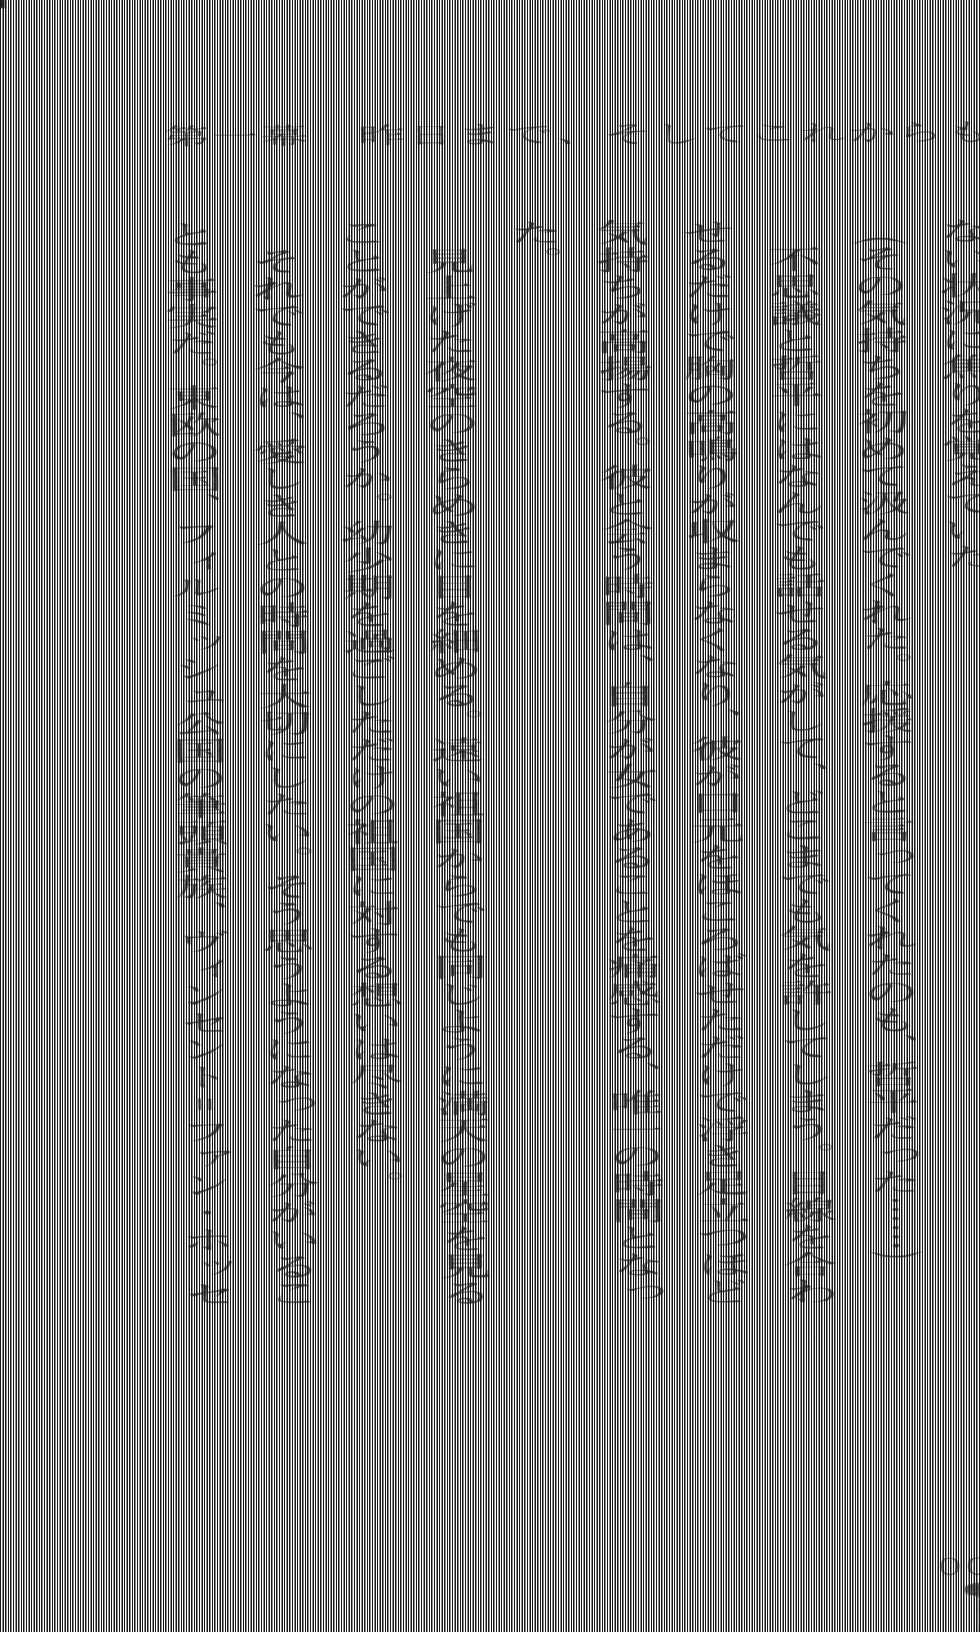 [Utsusemi × Yoshi Hyuma, Komori Kei] Princess Lover! Sylvia van Hossen no Koiji 2 (Original by Ricotta) - Page 33